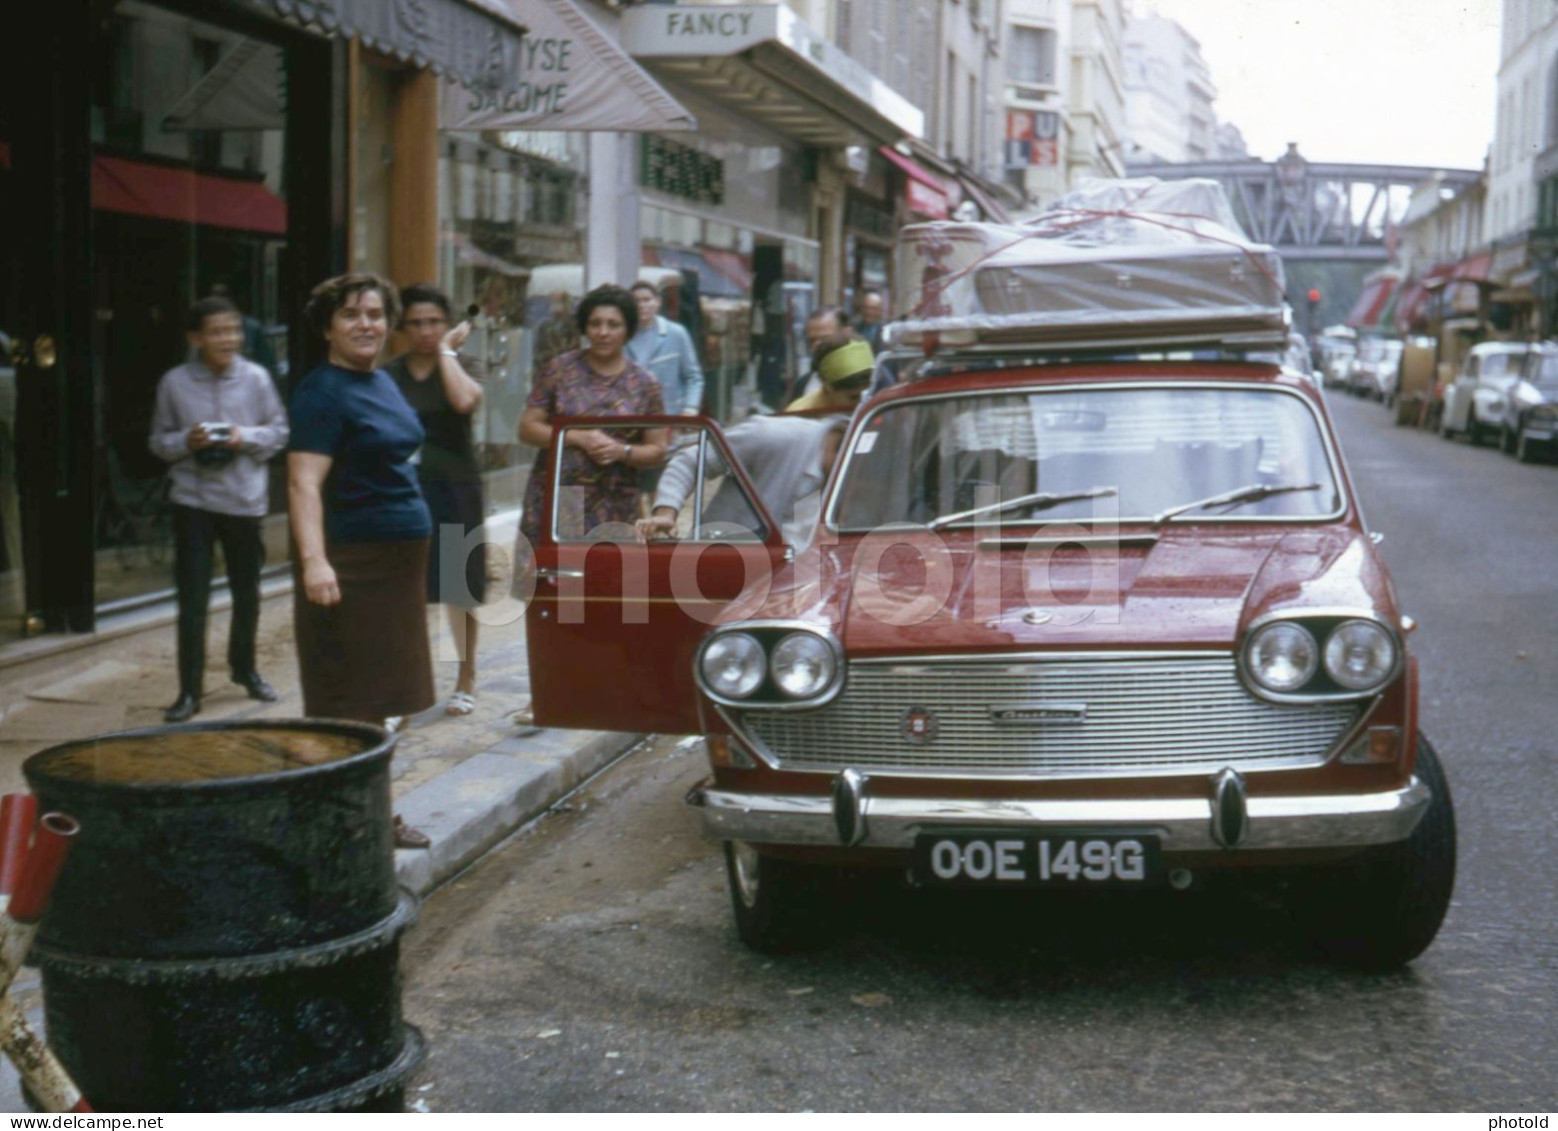 1969 UK PLATE AUSTIN 3 LITRE CAR RUE DU COMMERCE PARIS FRANCE 35mm AMATEUR DIAPOSITIVE SLIDE Not PHOTO No FOTO NB4129 - Diapositive